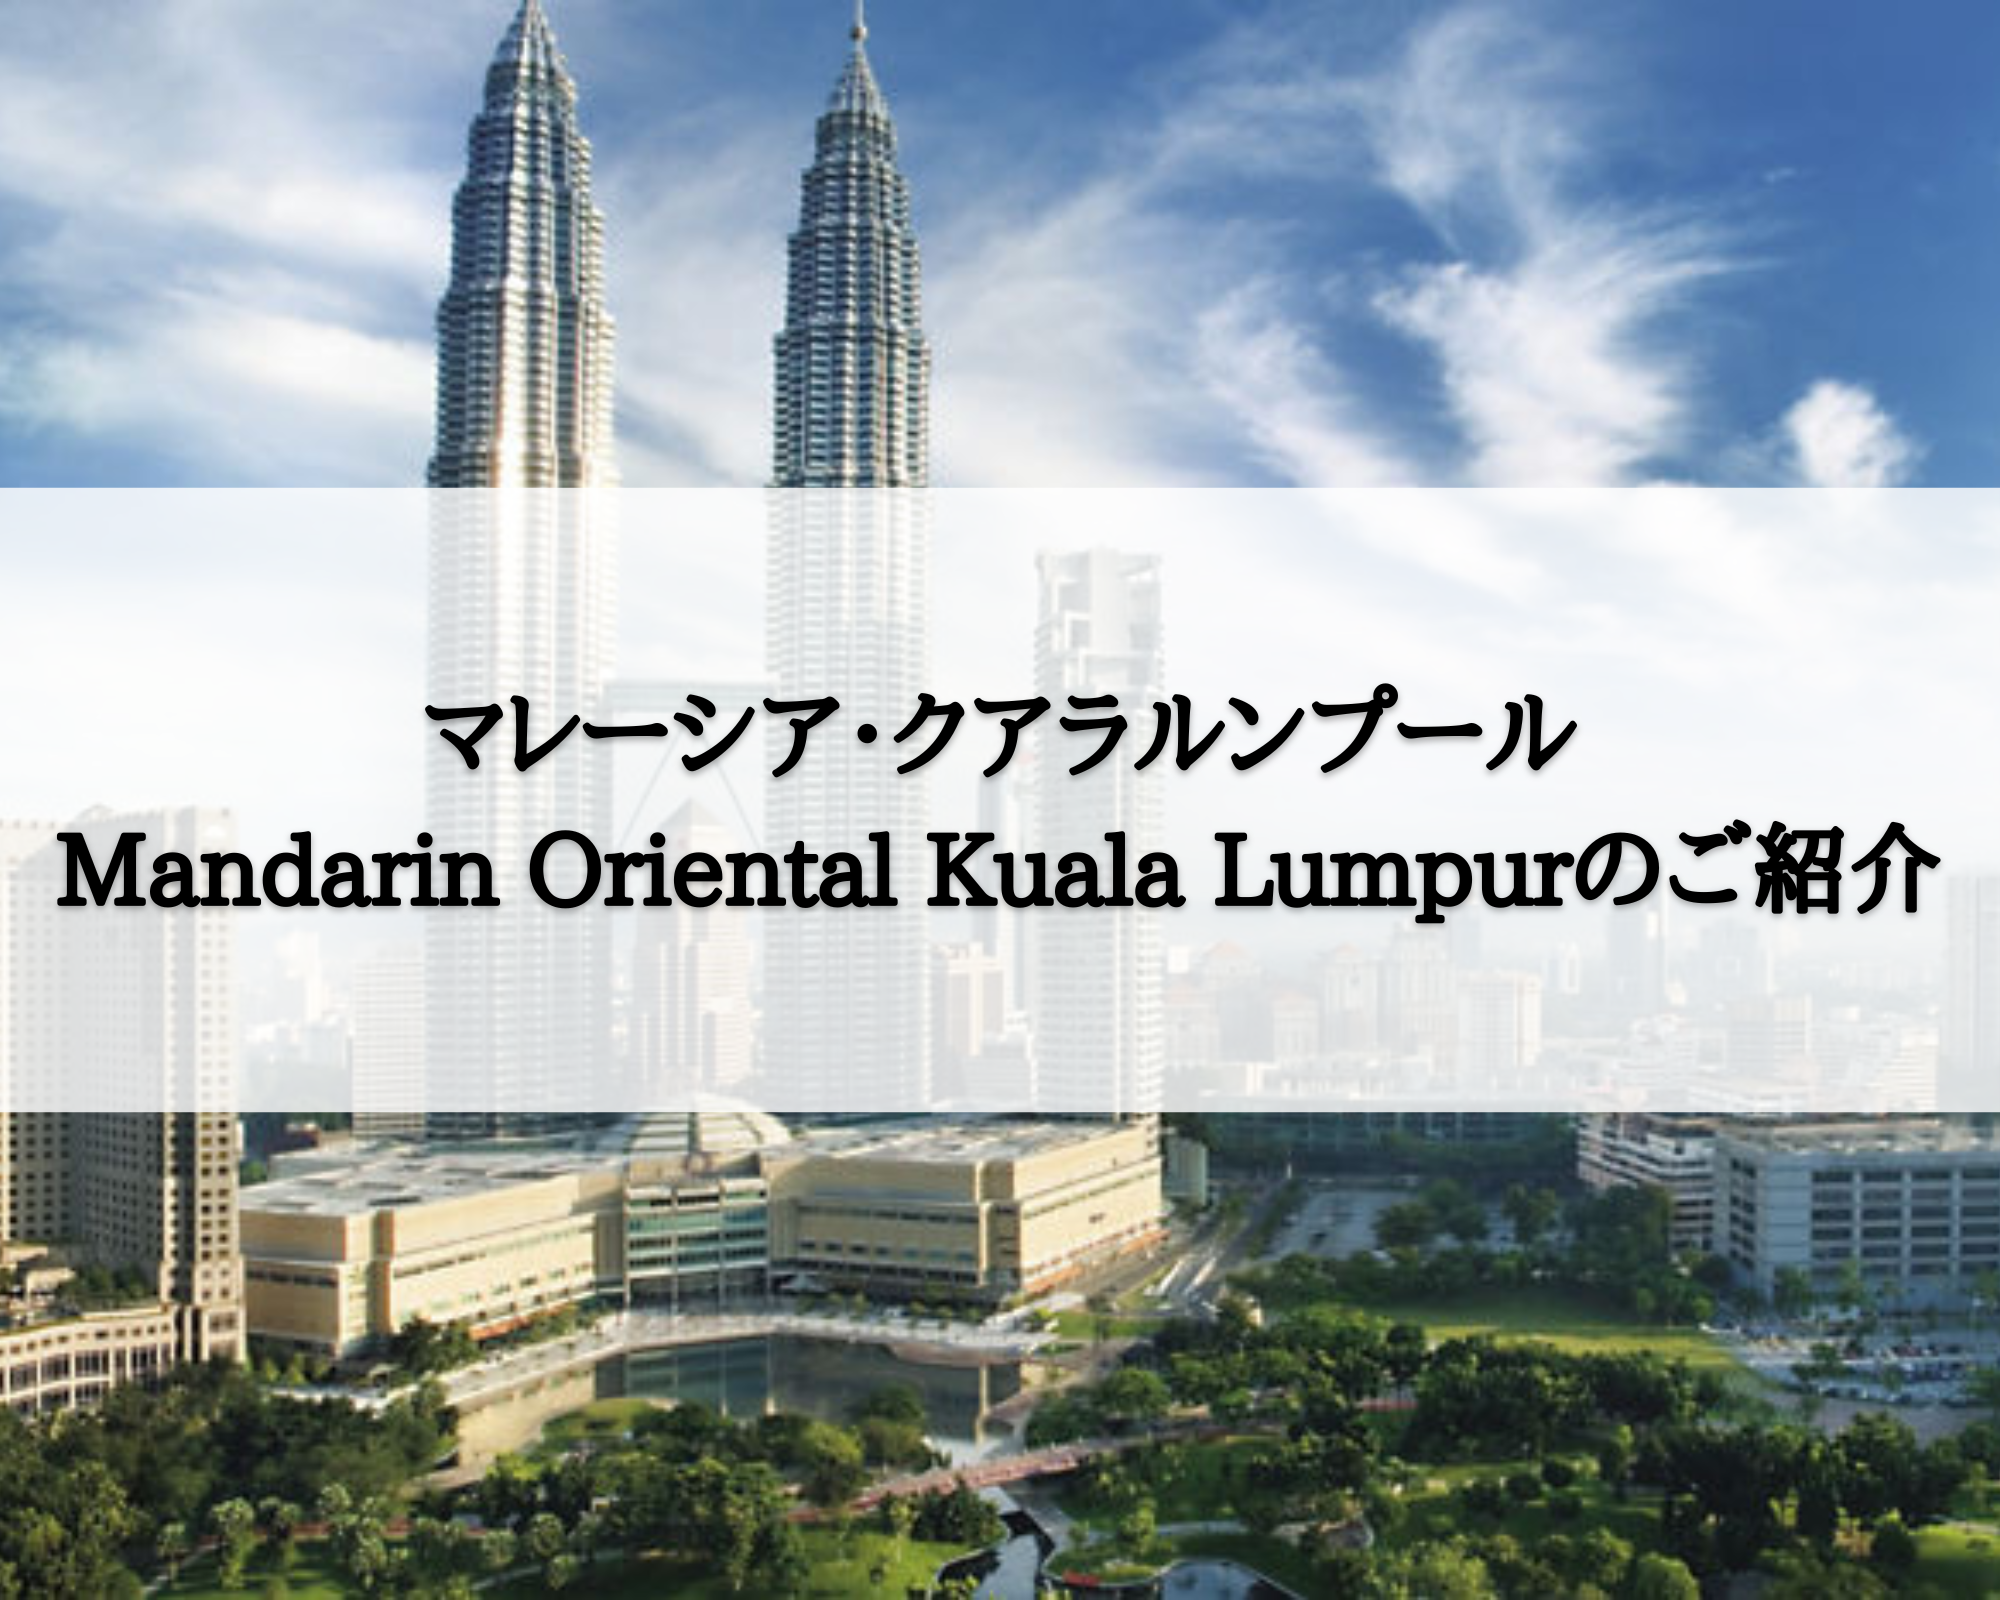 【マレーシア・クアラルンプール】Mandarin Oriental Kuala Lumpur